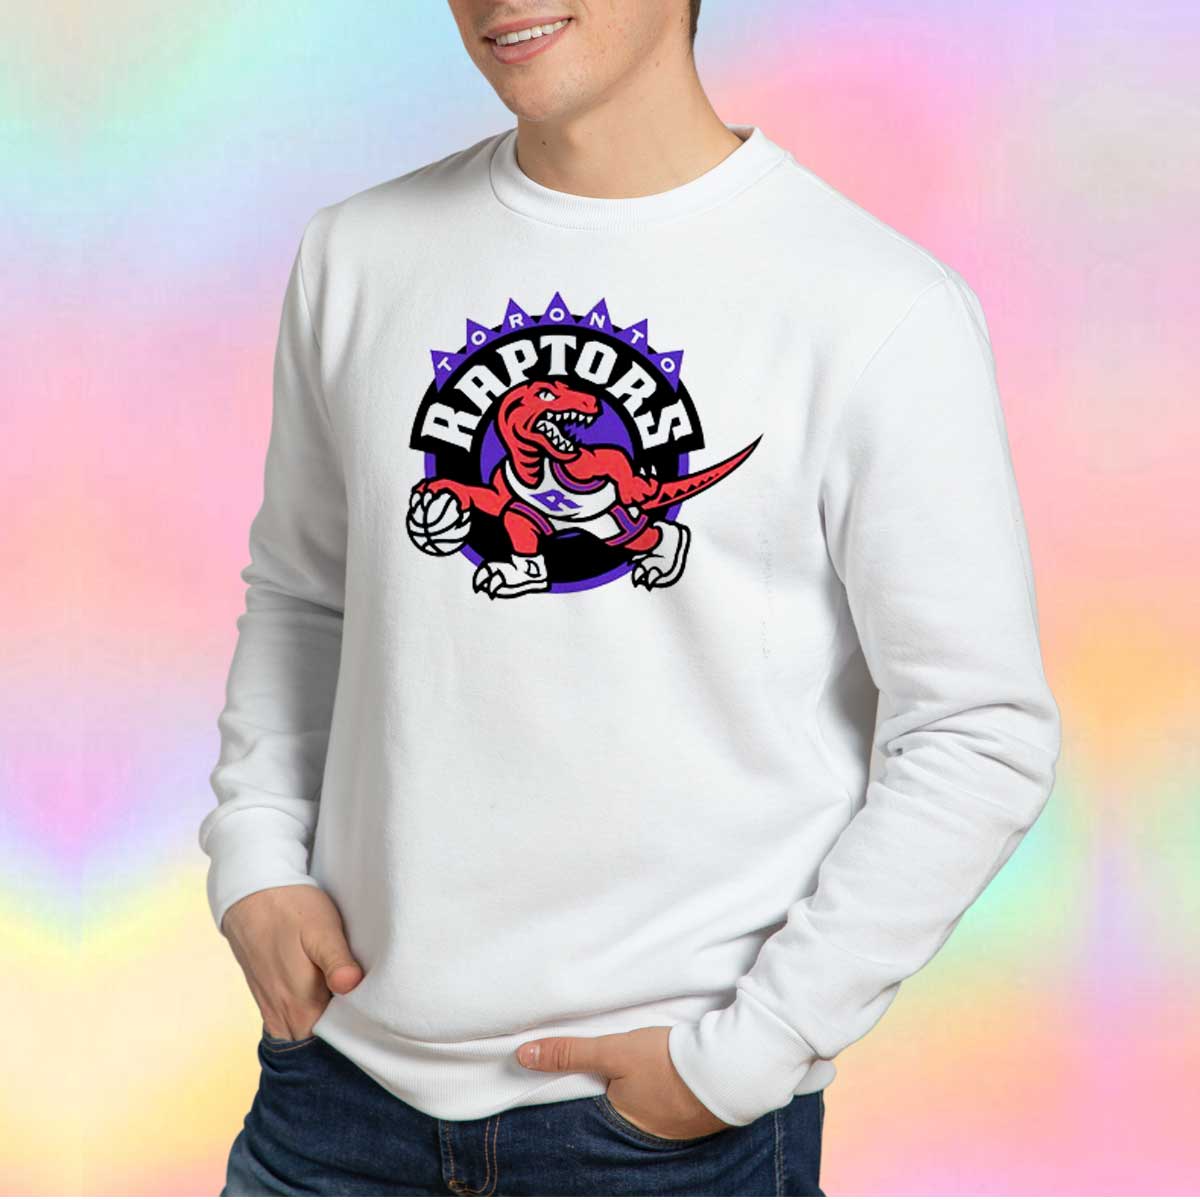 raptors crewneck sweatshirt